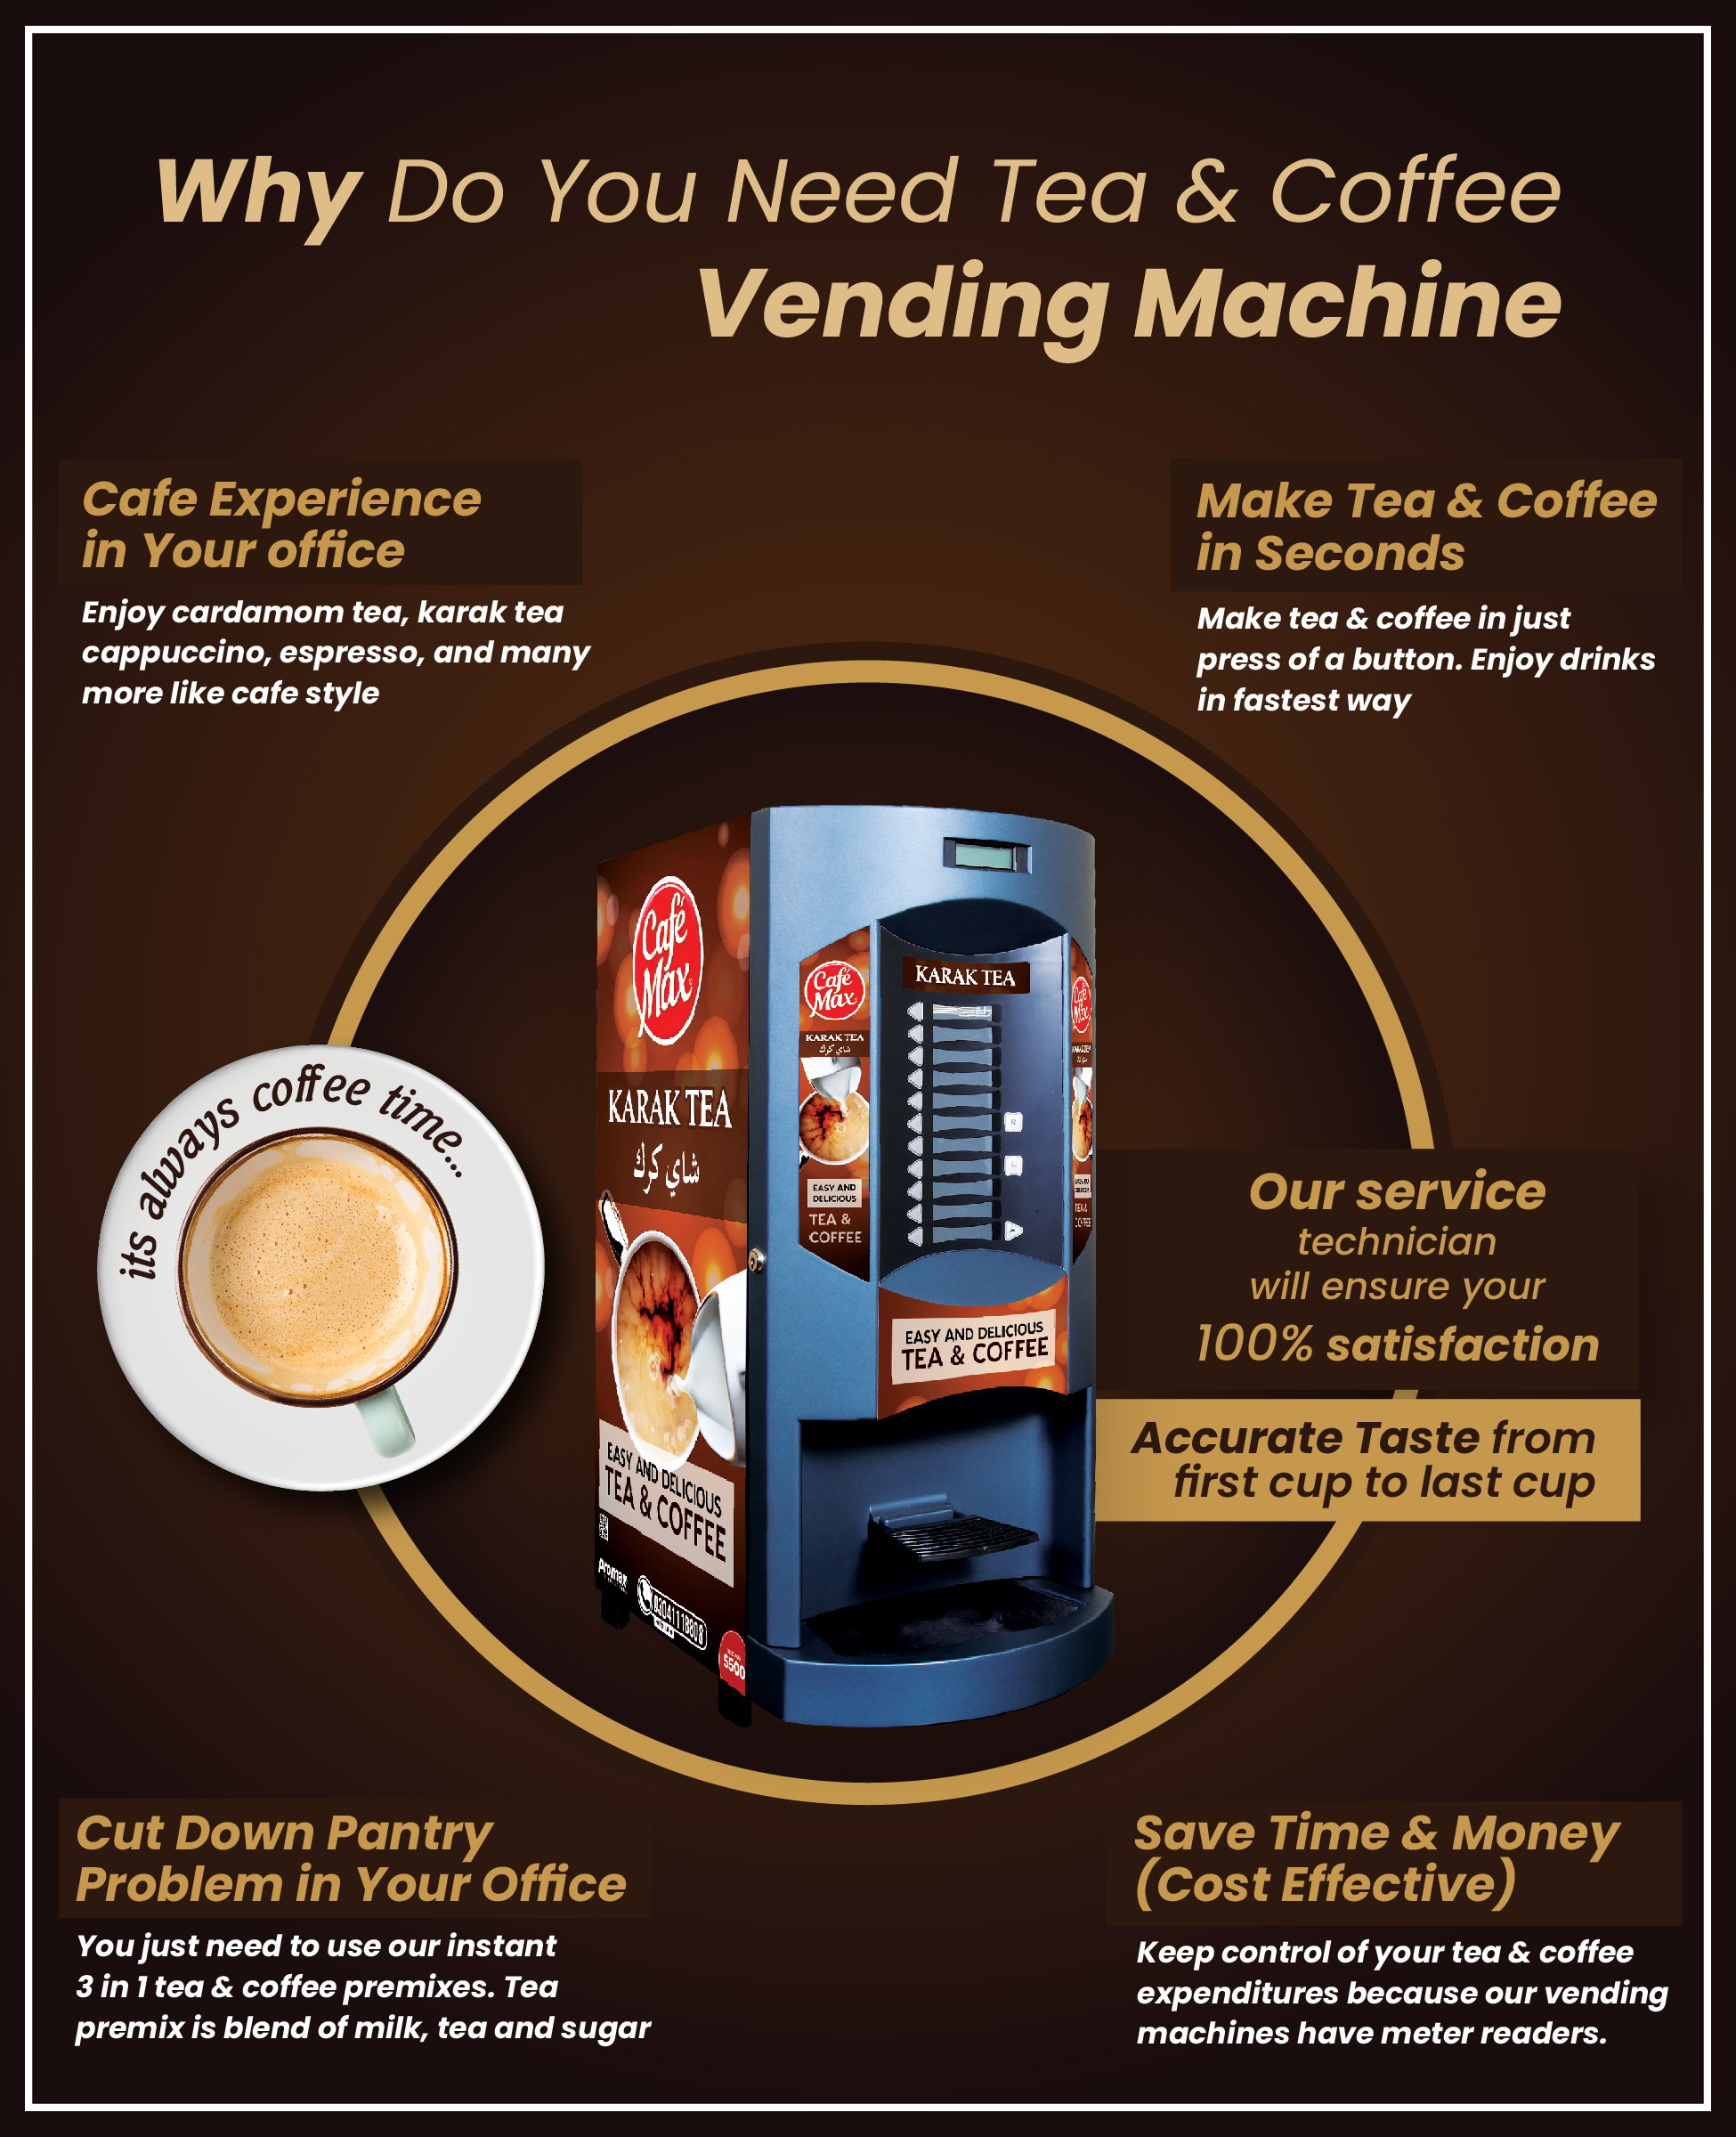 Whu do you need Tea and Coffee Vending Machine?